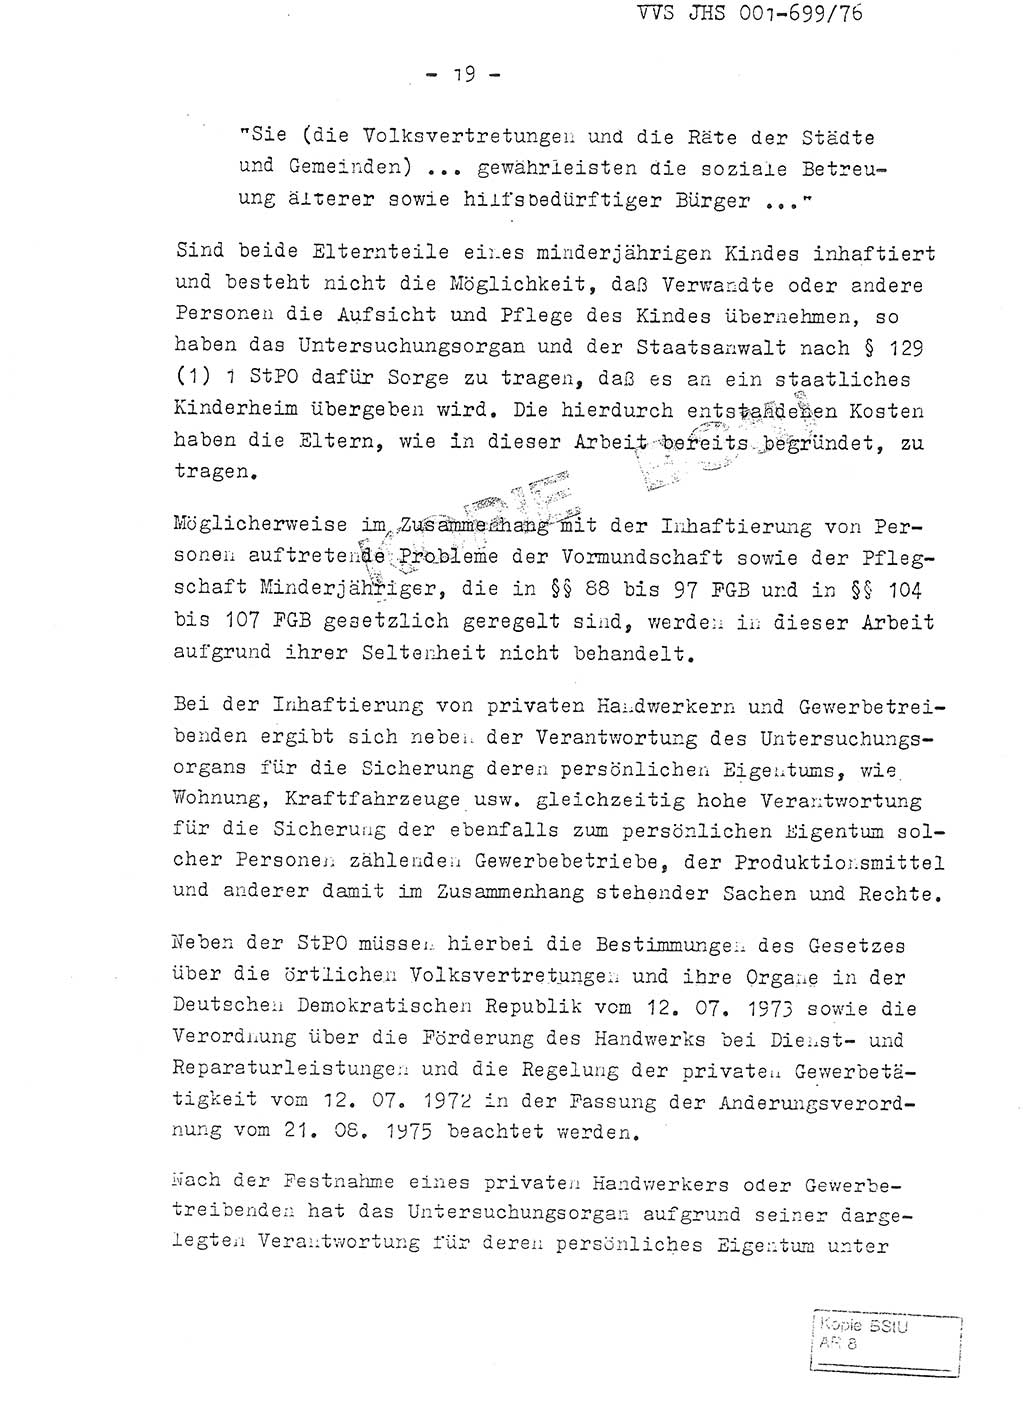 Fachschulabschlußarbeit Leutnant Volkmar Taubert (HA Ⅸ/9), Leutnant Axel Naumann (HA Ⅸ/9), Unterleutnat Detlef Debski (HA Ⅸ/9), Ministerium für Staatssicherheit (MfS) [Deutsche Demokratische Republik (DDR)], Juristische Hochschule (JHS), Vertrauliche Verschlußsache (VVS) 001-699/76, Potsdam 1976, Seite 19 (FS-Abschl.-Arb. MfS DDR JHS VVS 001-699/76 1976, S. 19)